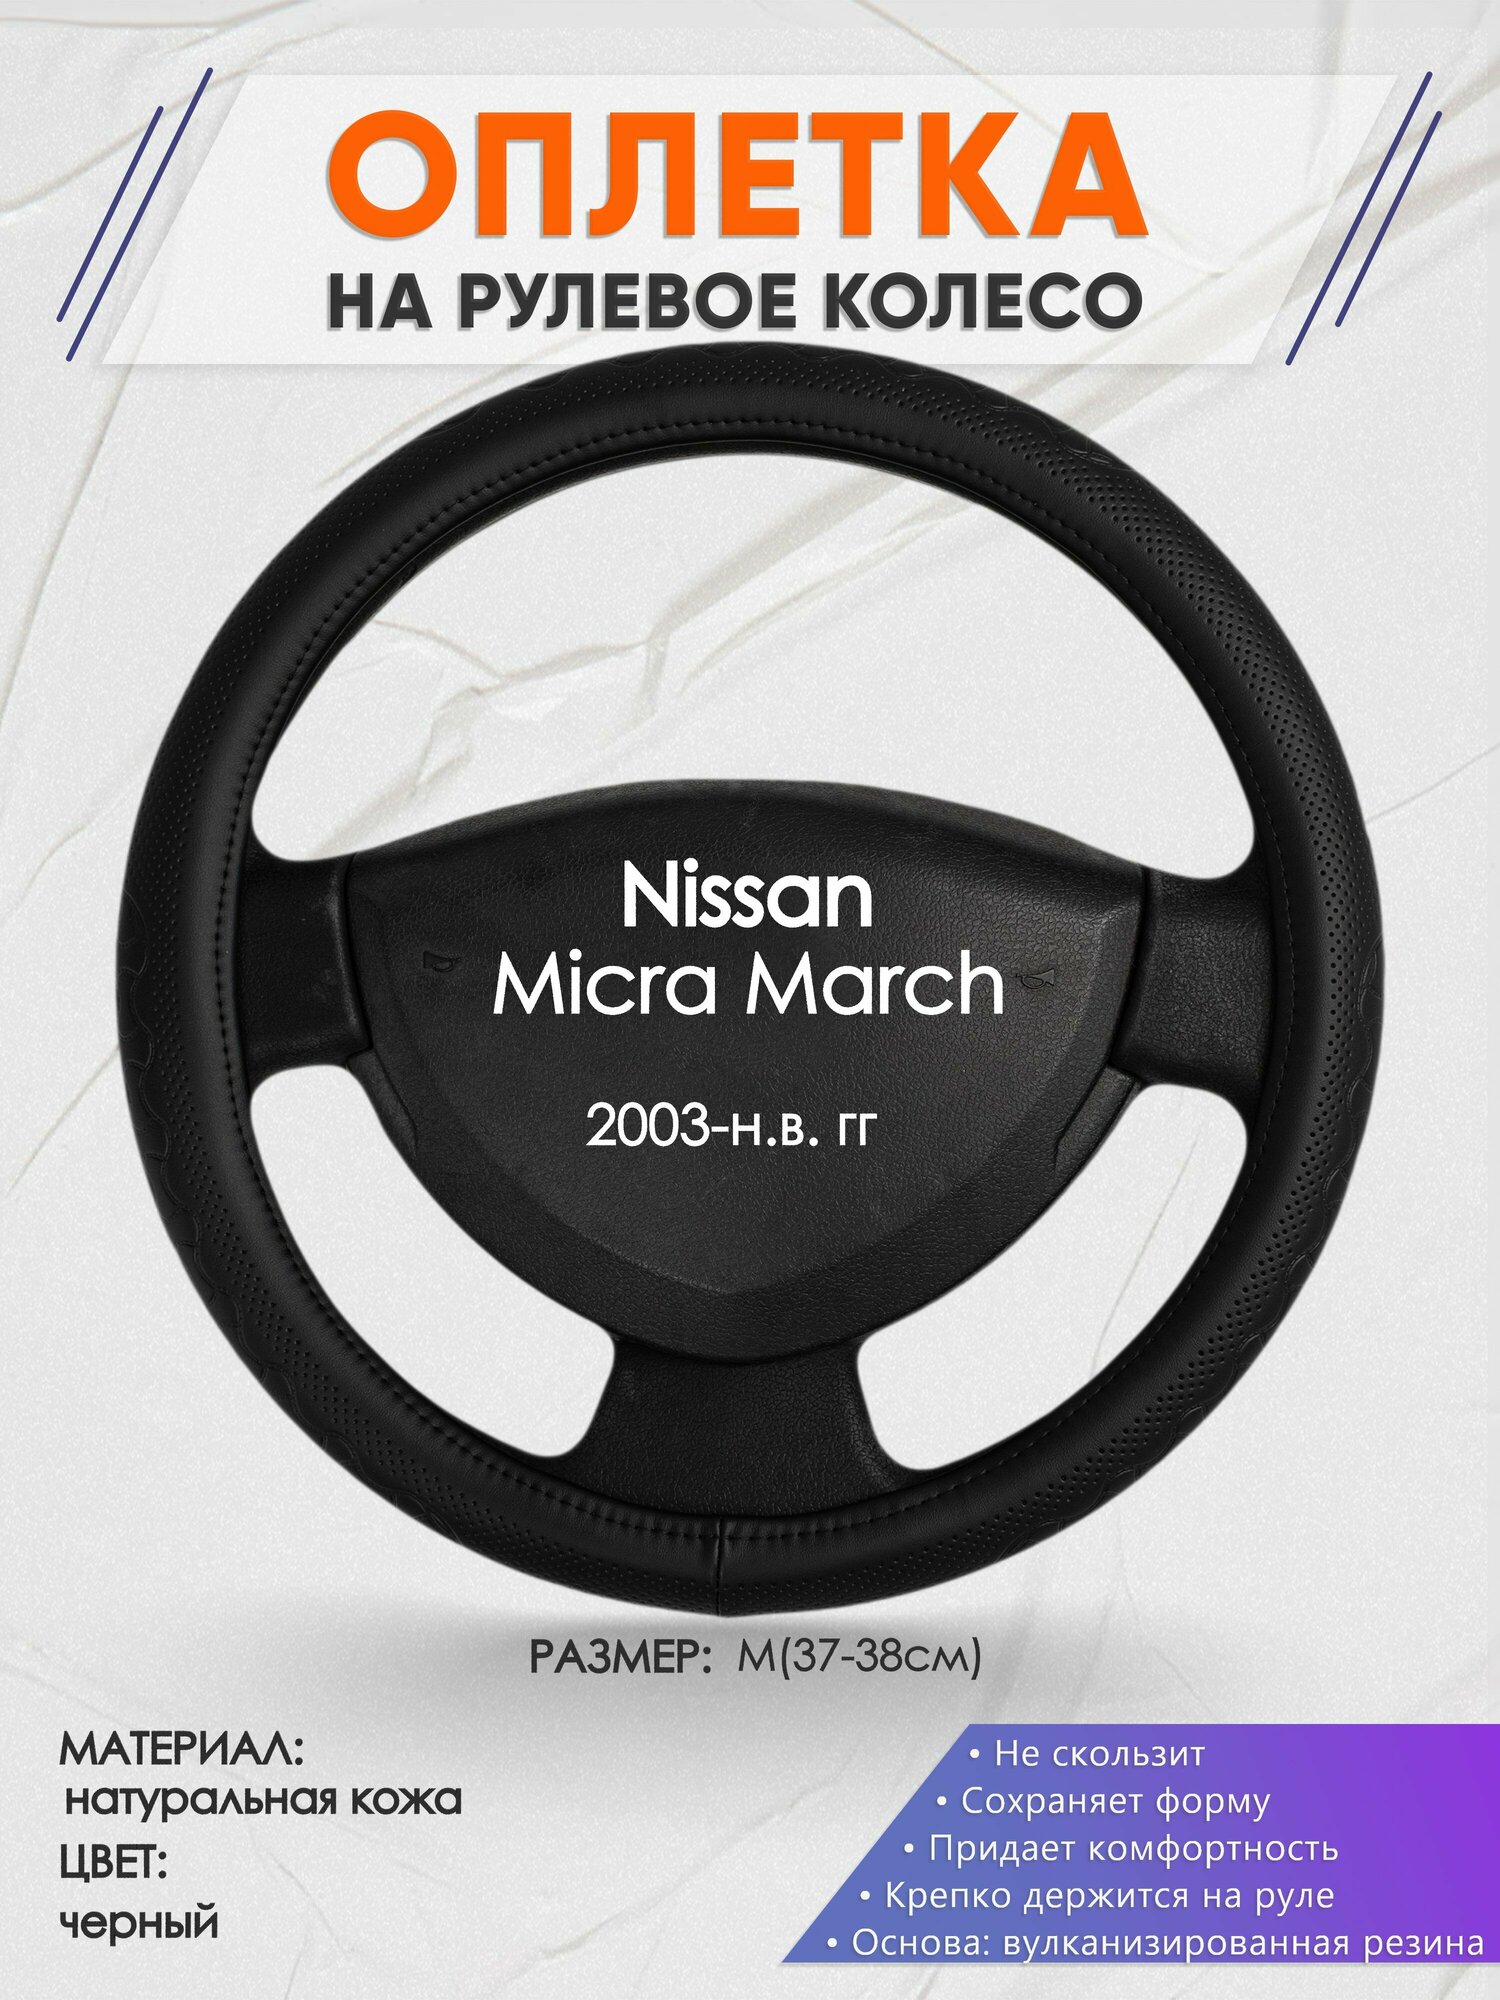 Оплетка на руль для Nissan Micra March(Ниссан Микра) 2003-н. в, M(37-38см), Натуральная кожа 25